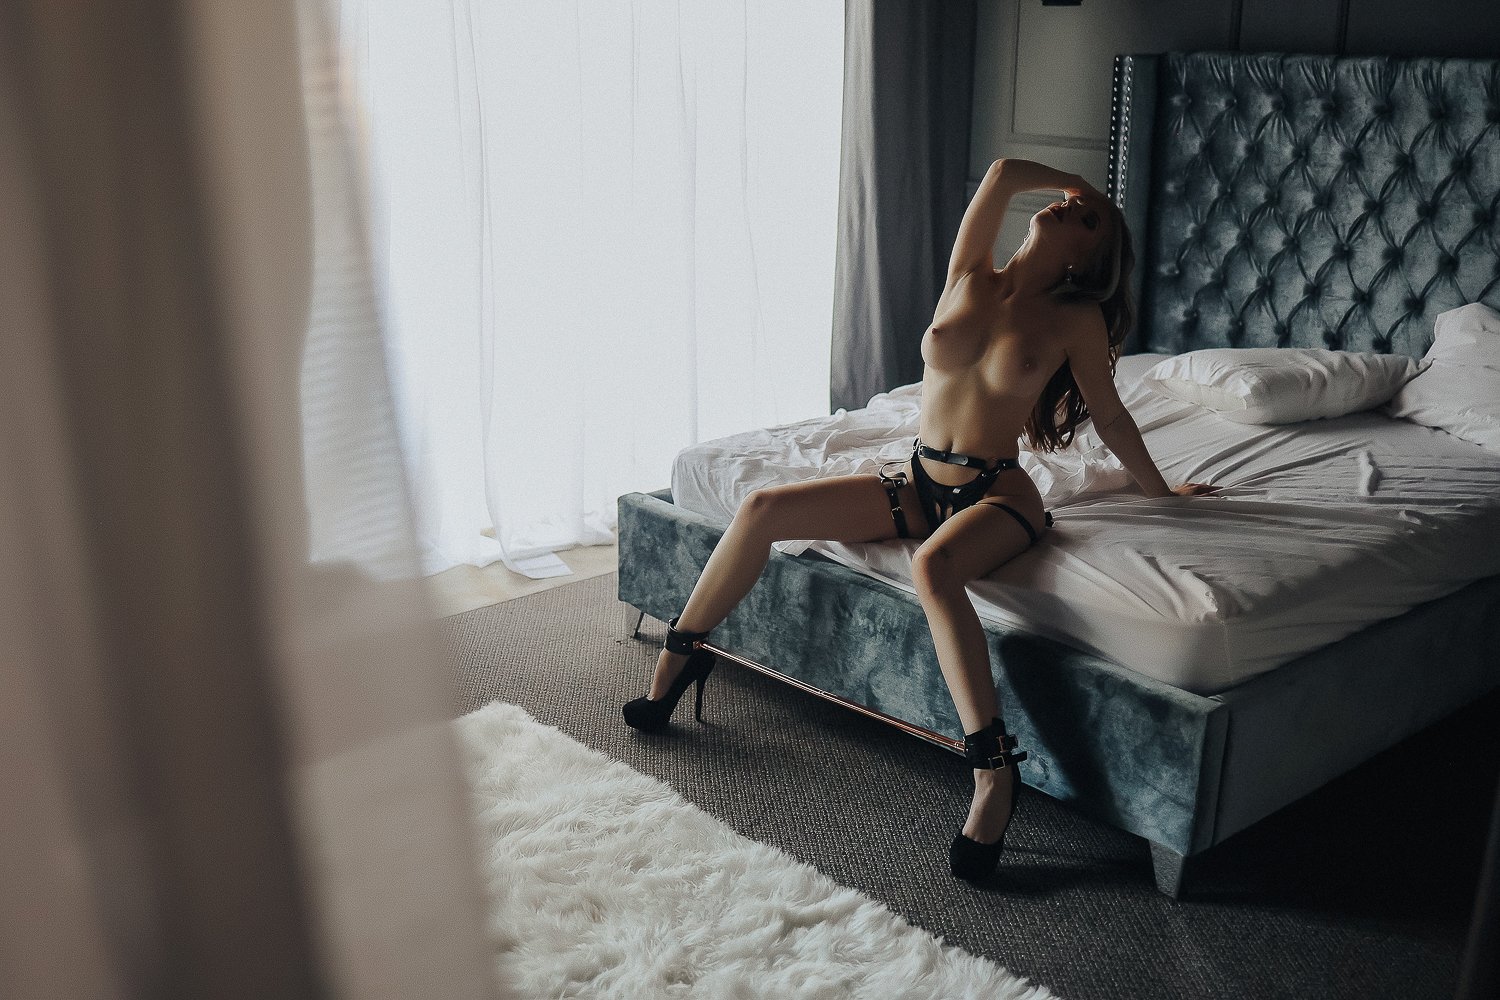 boudoir photo using a spreader bar